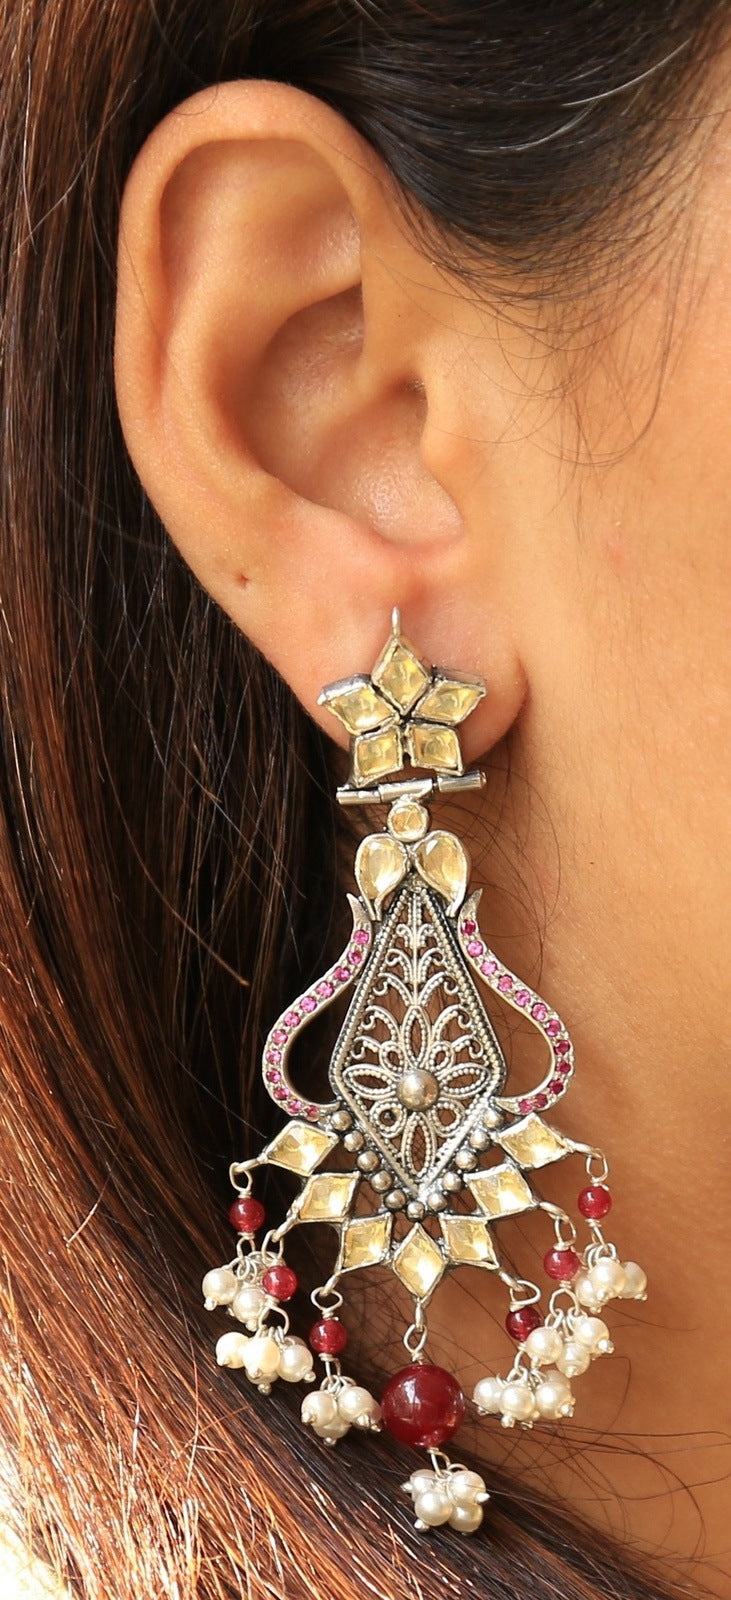 Vijaya Queen Artisanal Earrings